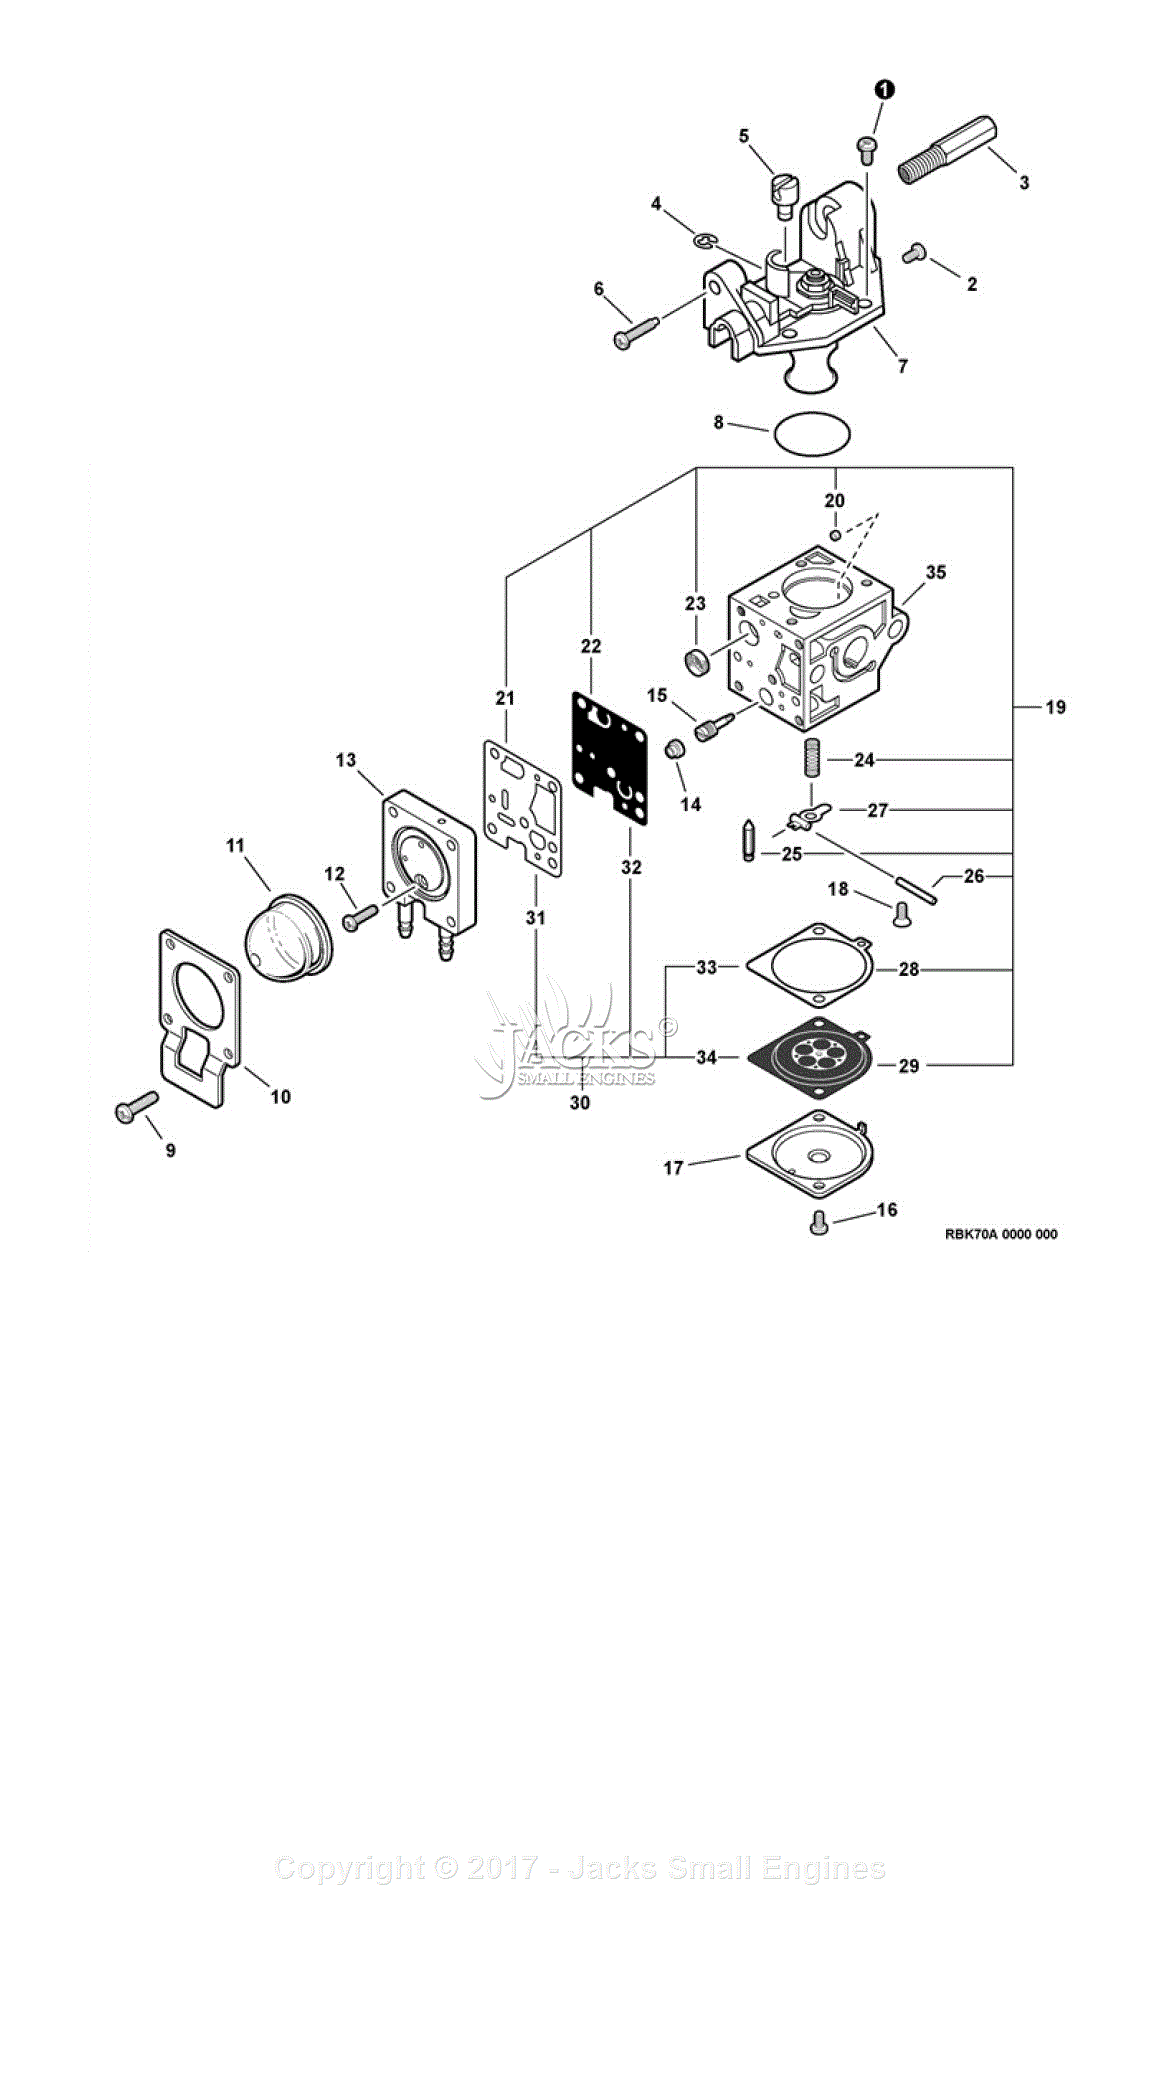 echo srm 210 carburetor diagram